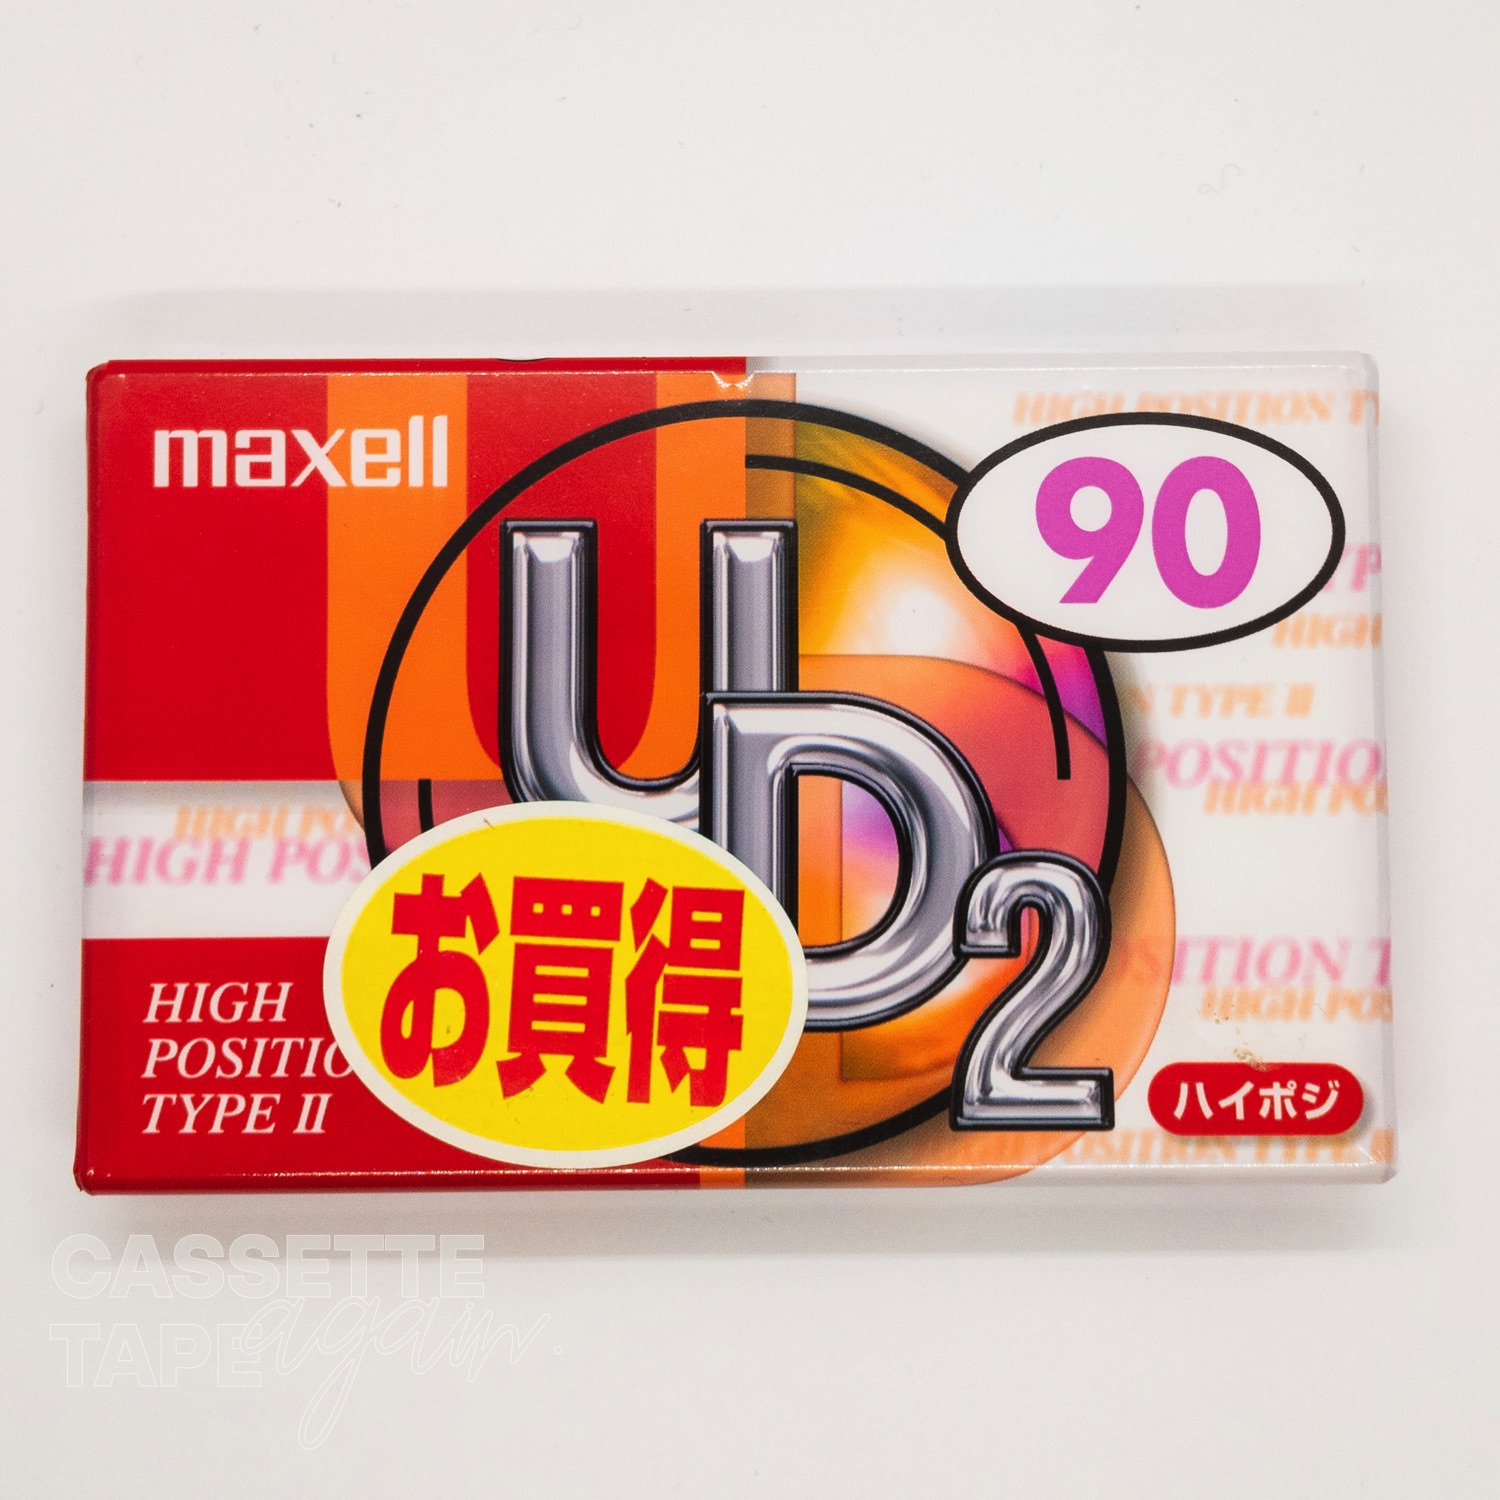 UD2 90 / maxell(ハイポジ)